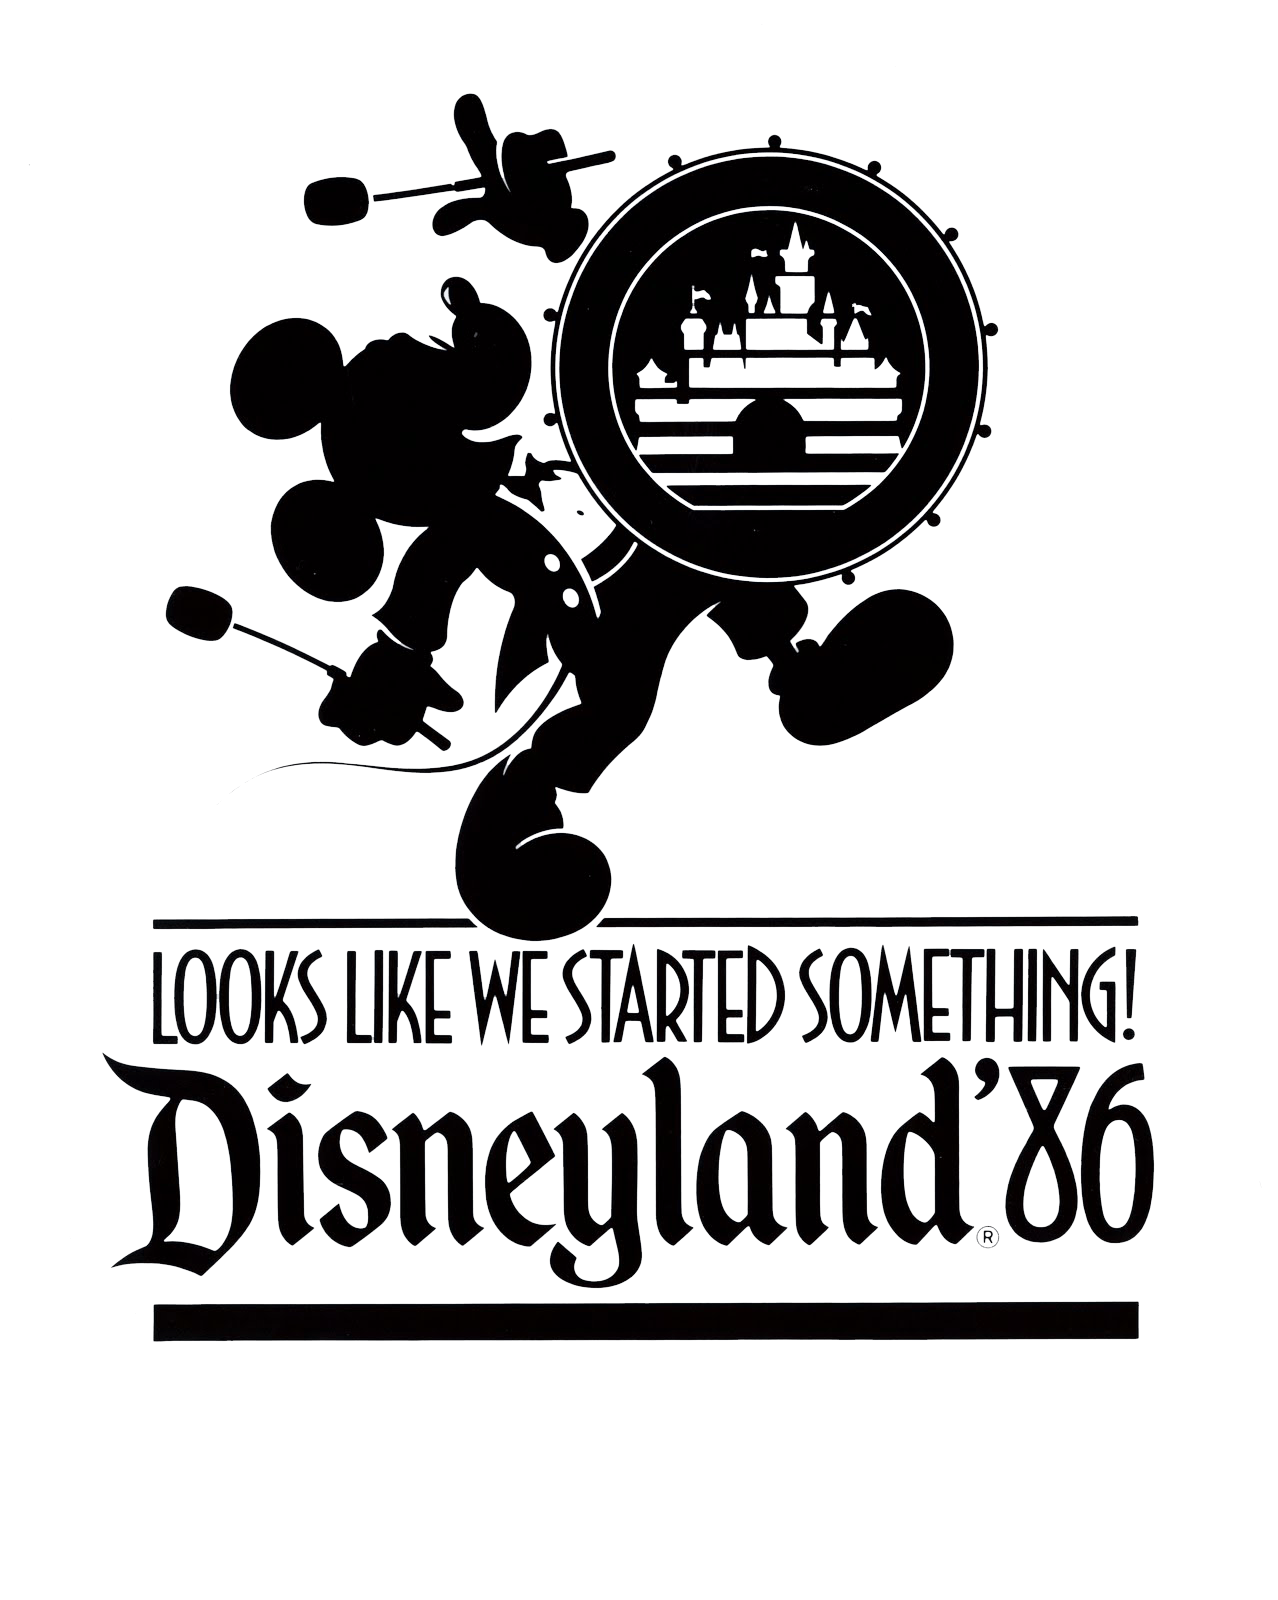 Disneylan Logo - Disneyland